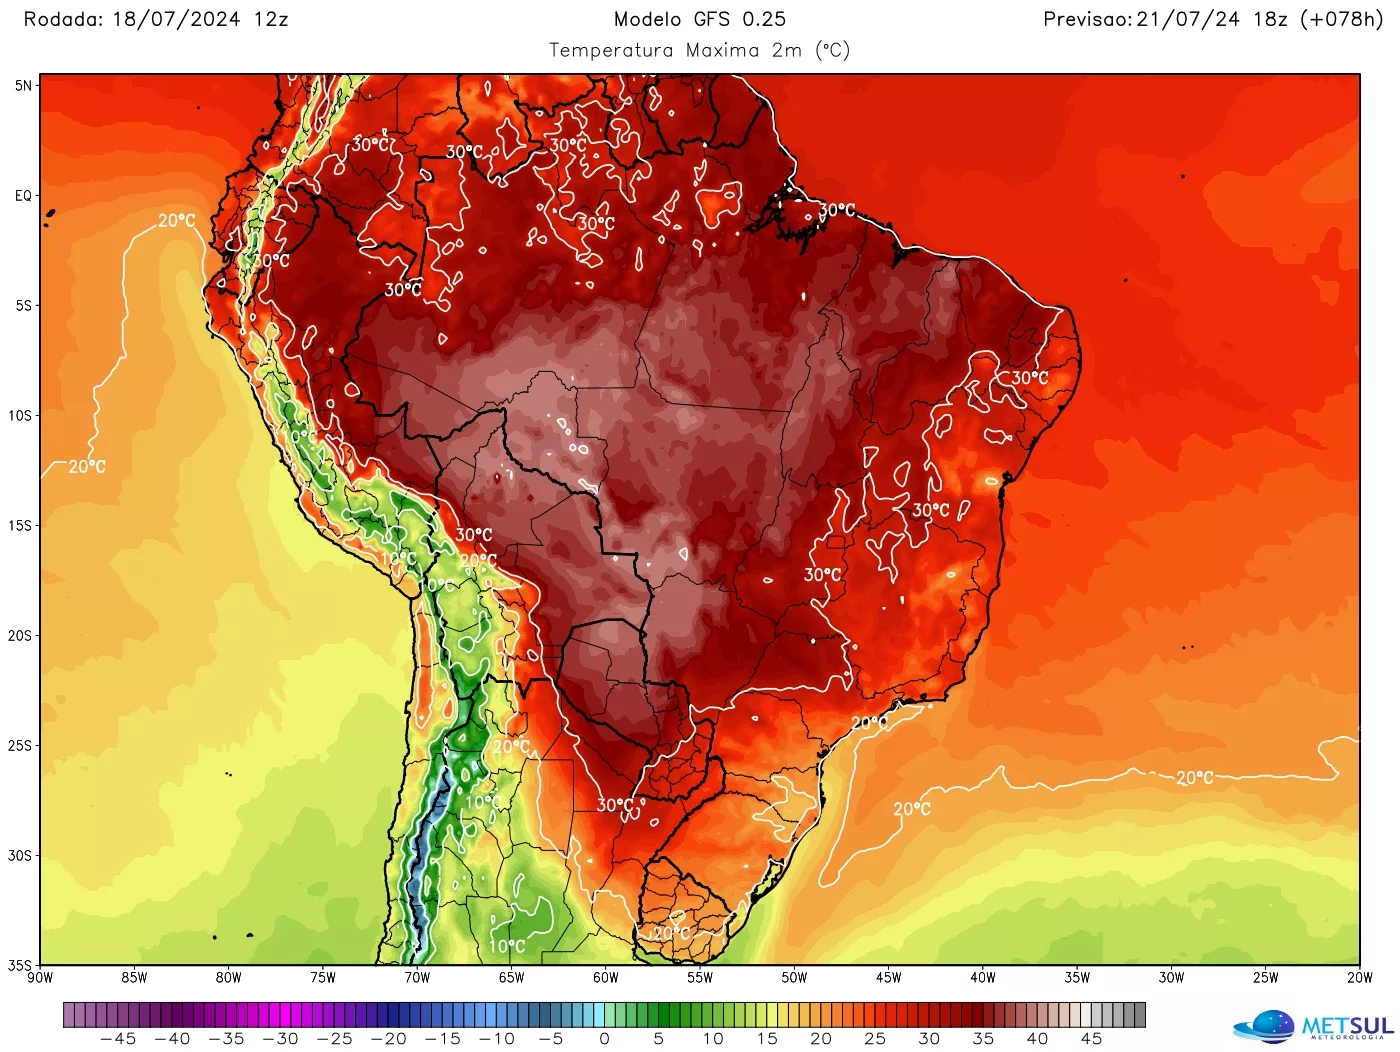 Mapa da previsão da onda de calor no Brasil feito pelo METSUL